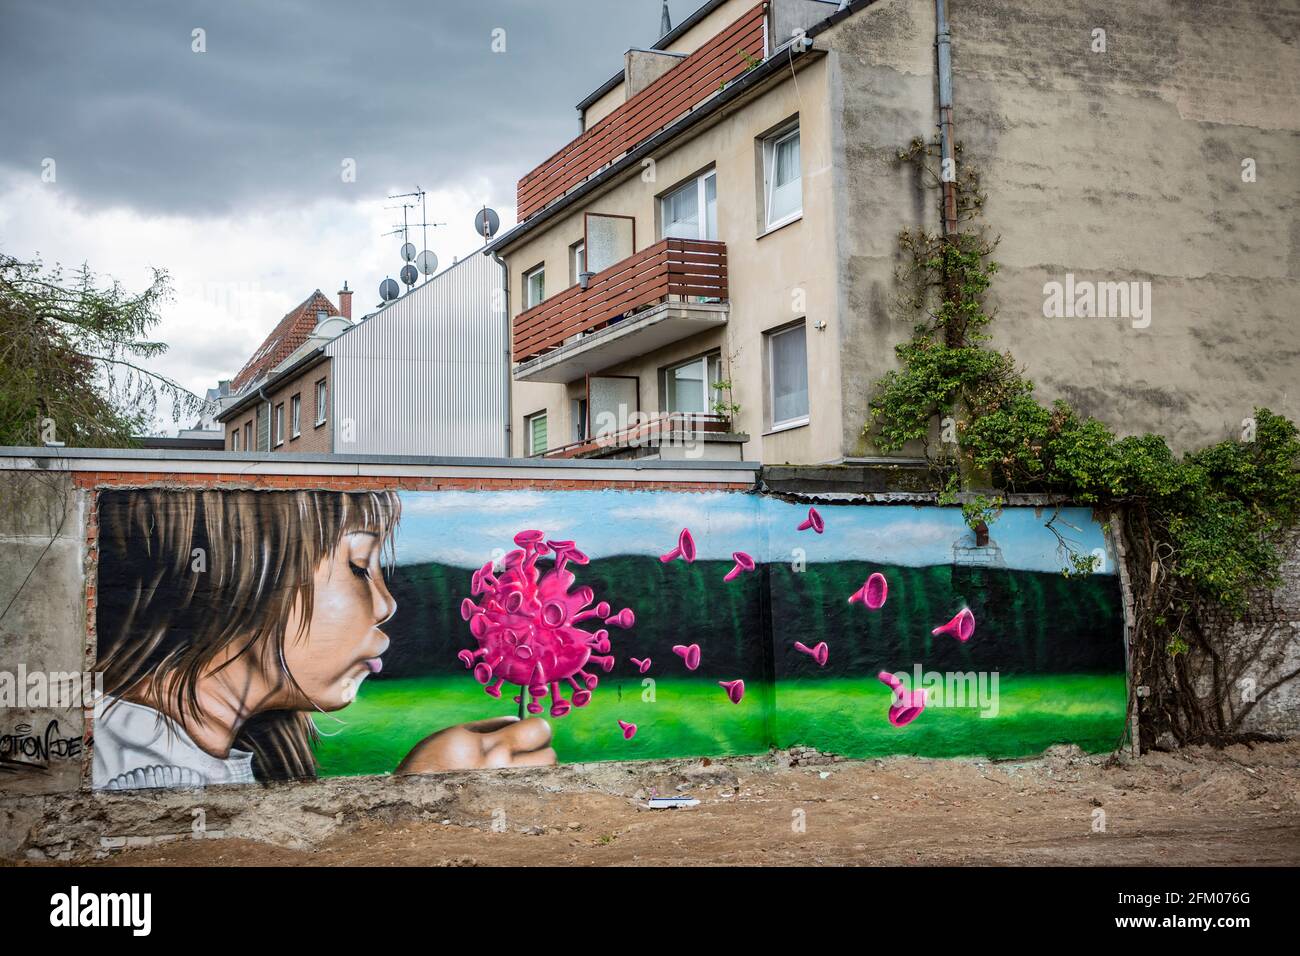 Ein Graffiti an einer alten Mauer zeigt ein Mädchen, welches wie bei einer Pusteblume ein Coronavirus anpustet, welches dann auseinander fliegt. Ein s Foto Stock